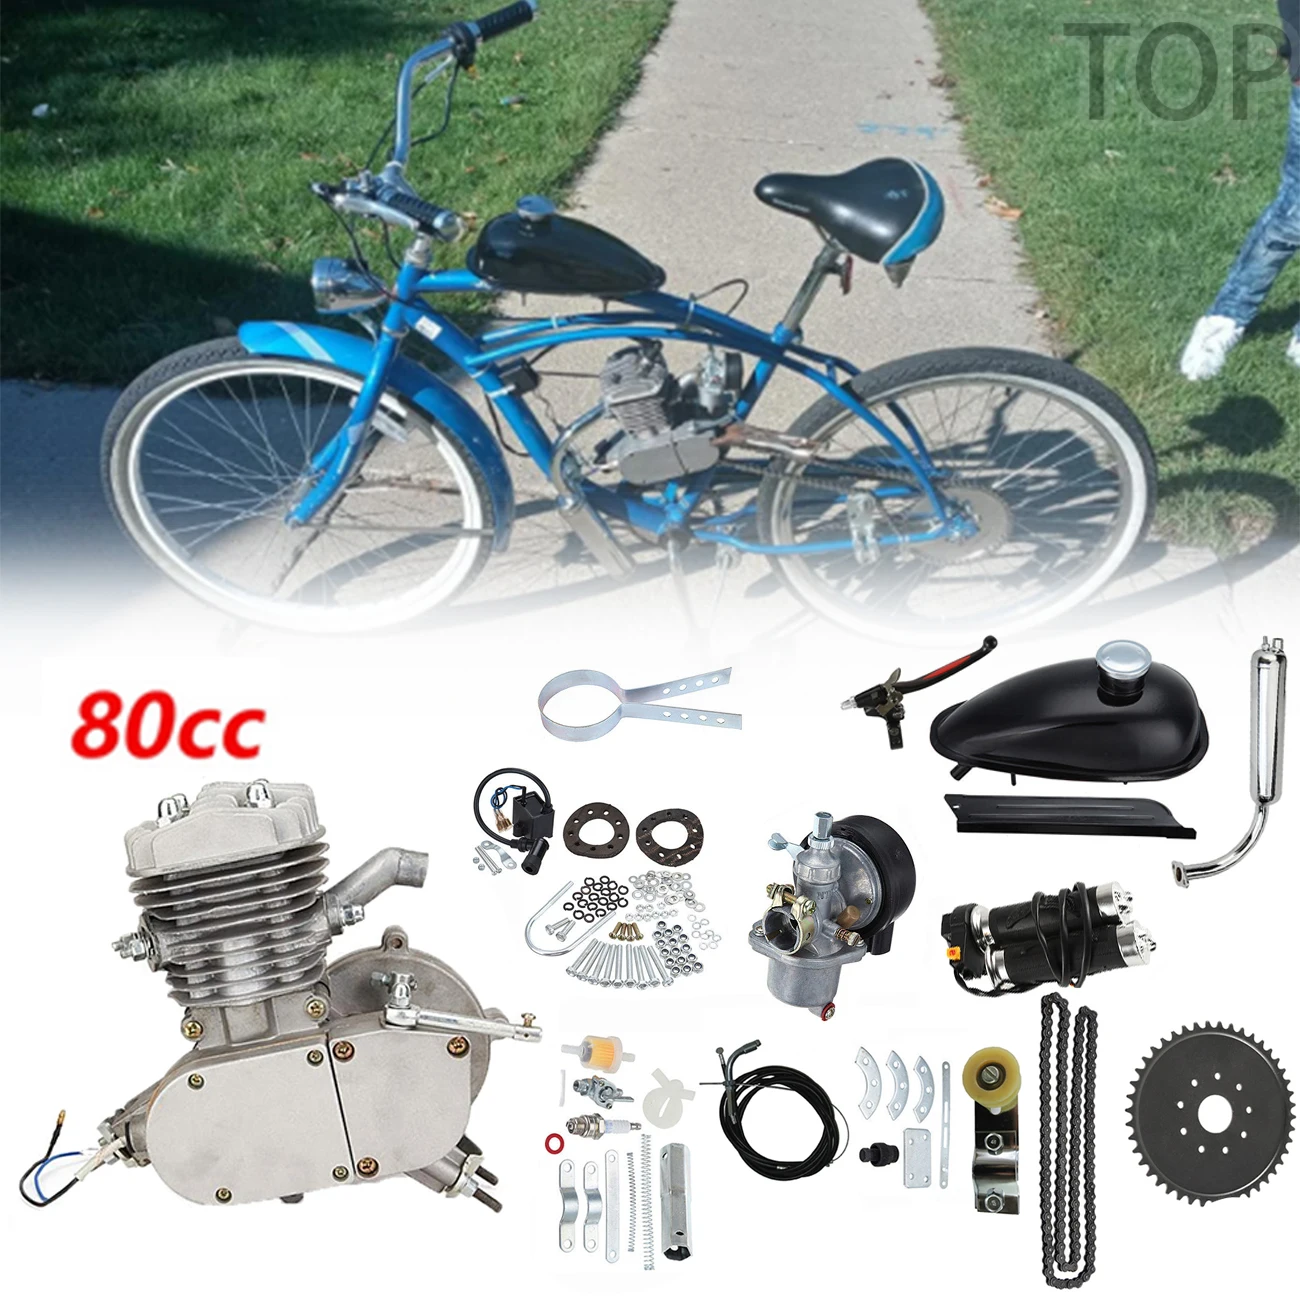 

Велосипед 80 куб. См, 2 такта, газовая лампа, одноцилиндровый велосипед с воздушным охлаждением, ручная сушка, сделай сам, моторизованный вело...